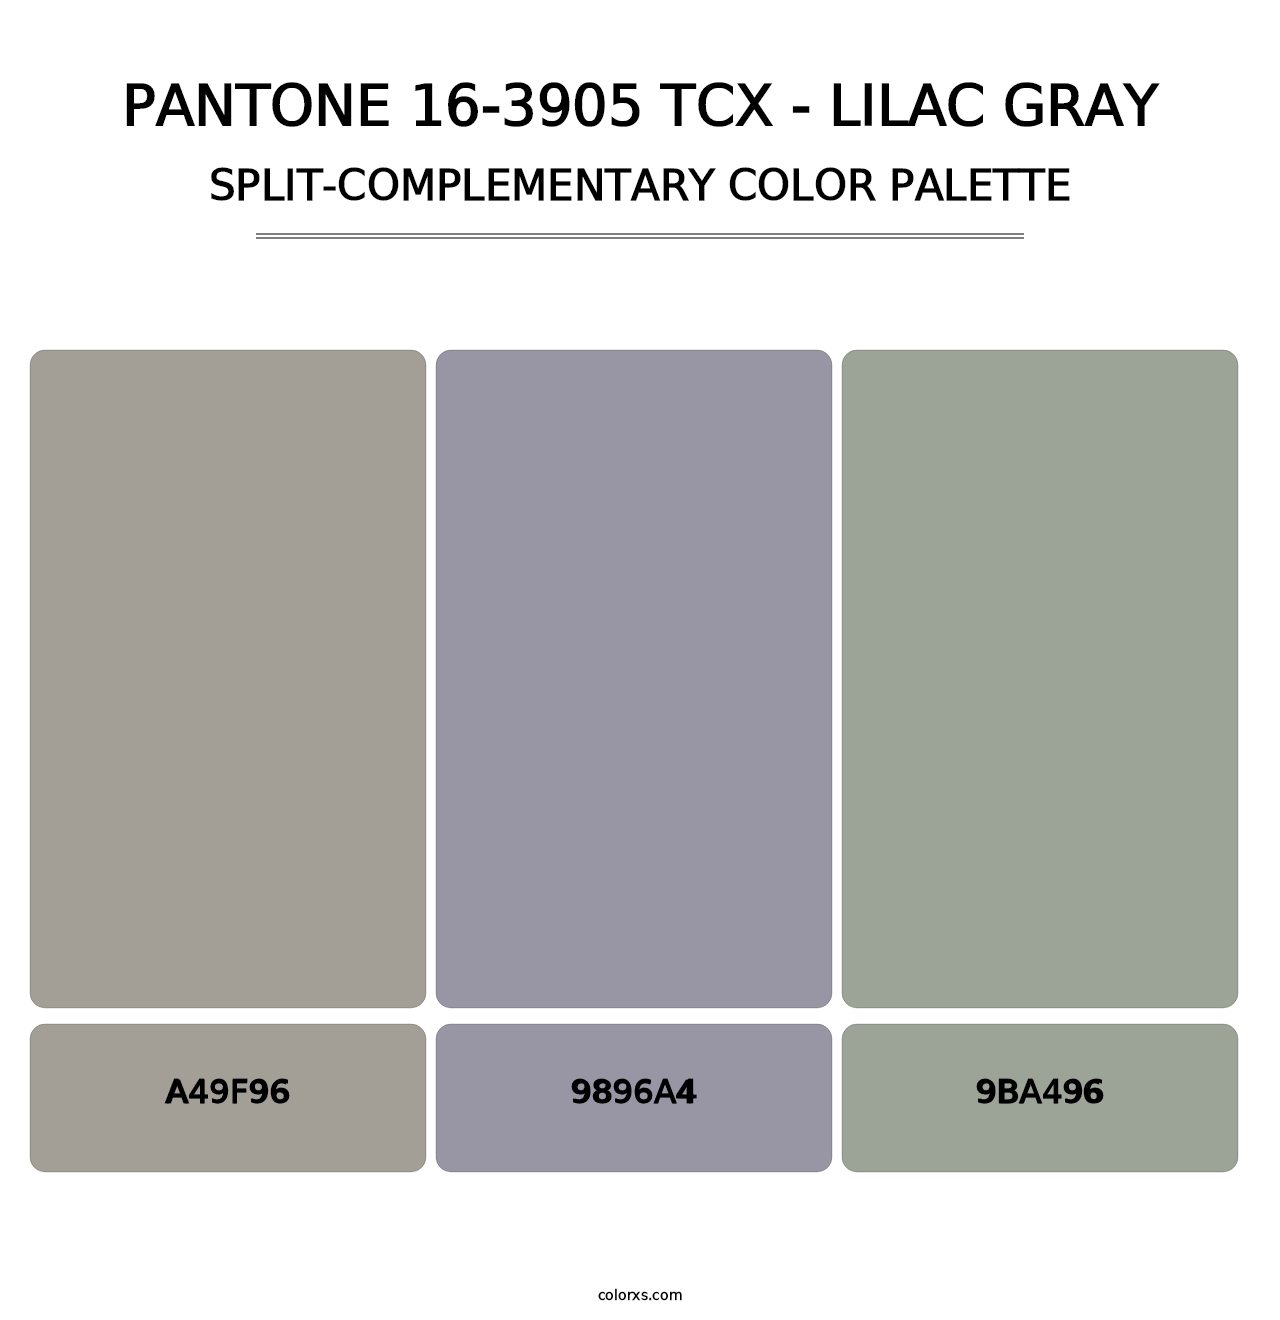 PANTONE 16-3905 TCX - Lilac Gray - Split-Complementary Color Palette